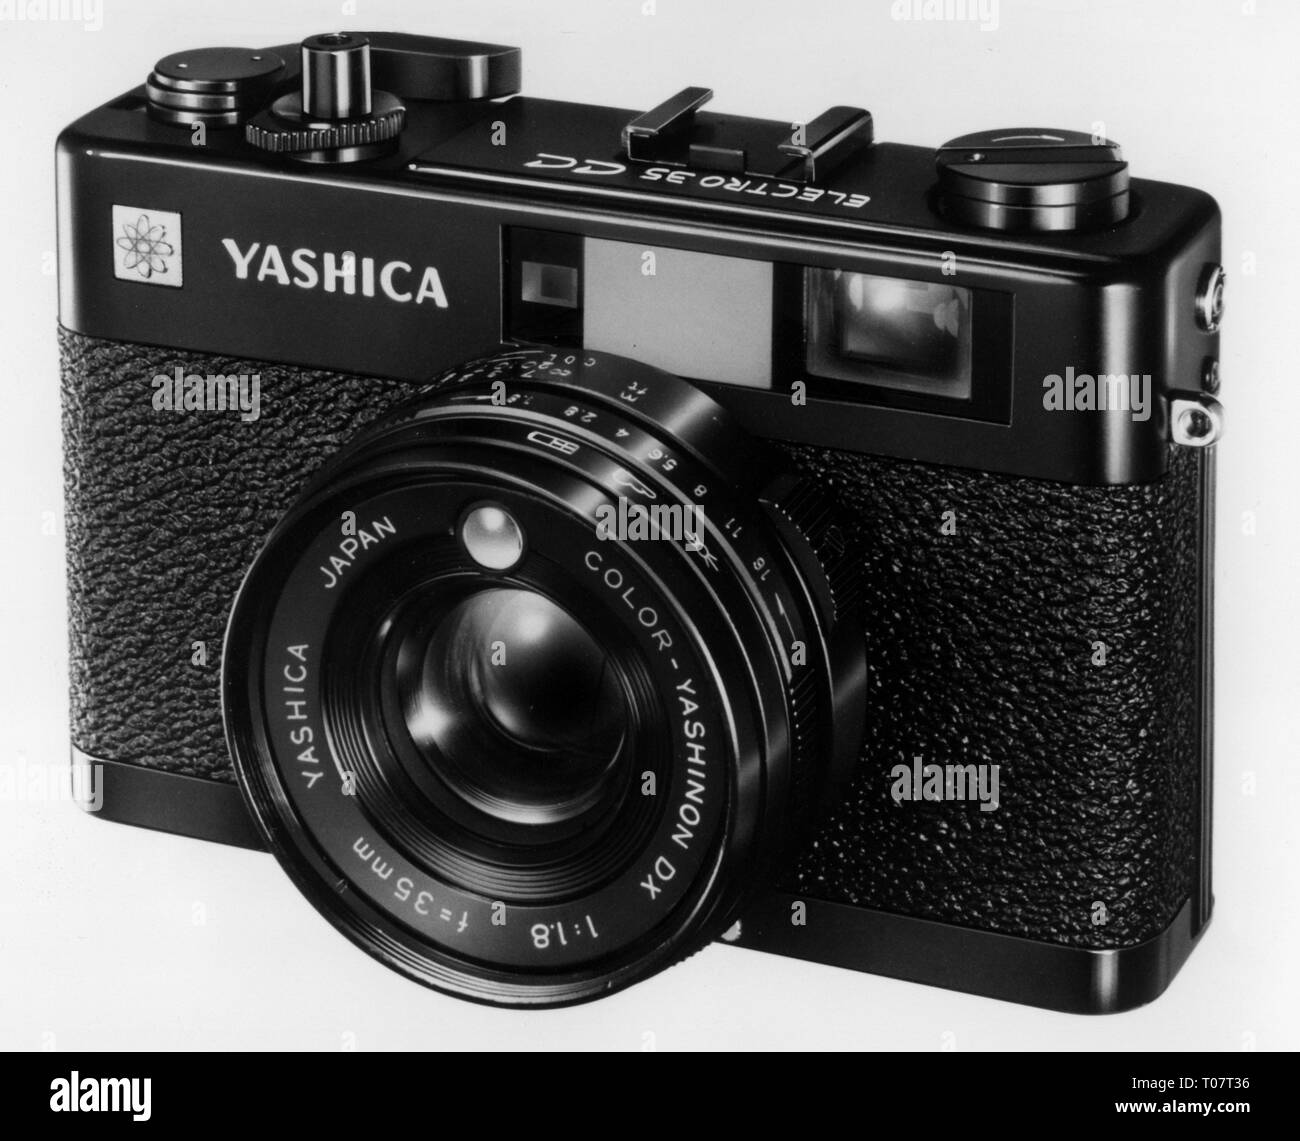 Fotografía, cámaras, cámaras compactas del fabricante japonés Yashica, modelo "Elector 53 CC', 1960, Additional-Rights-Clearance-Info-Not-Available Foto de stock